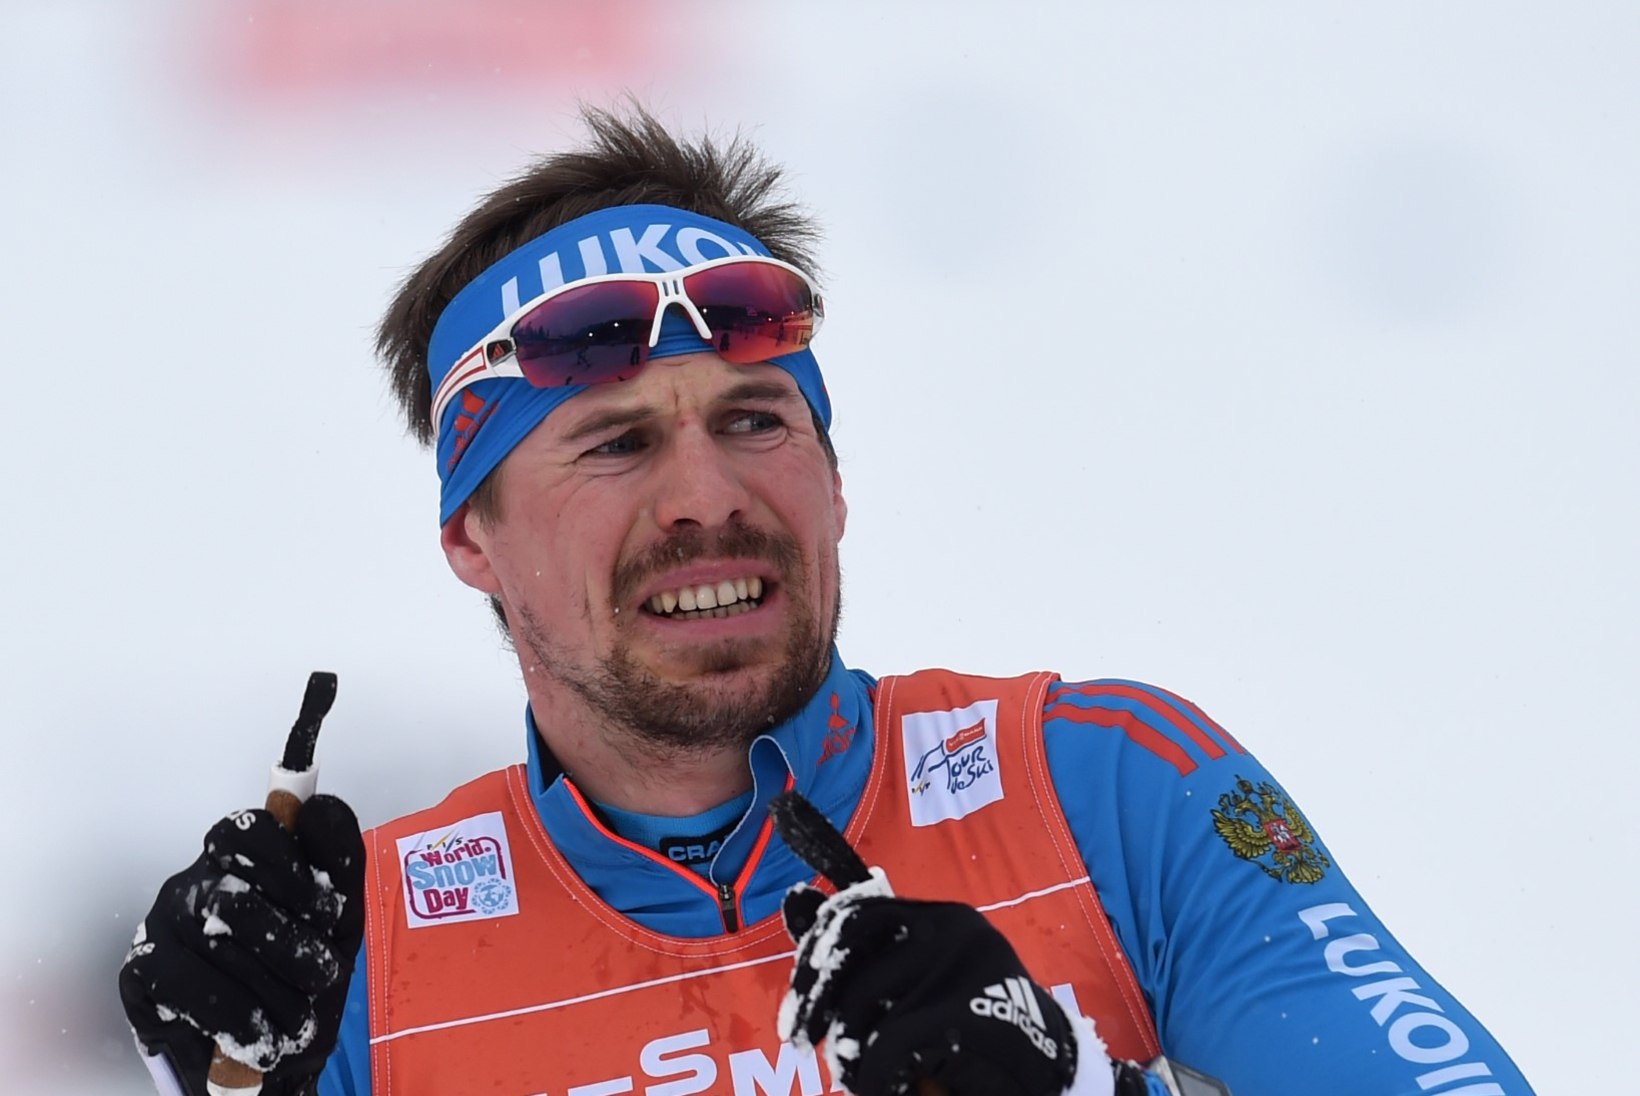 Tour de Ski jätkub Venemaa suusamehe ülemvõimu tähe all